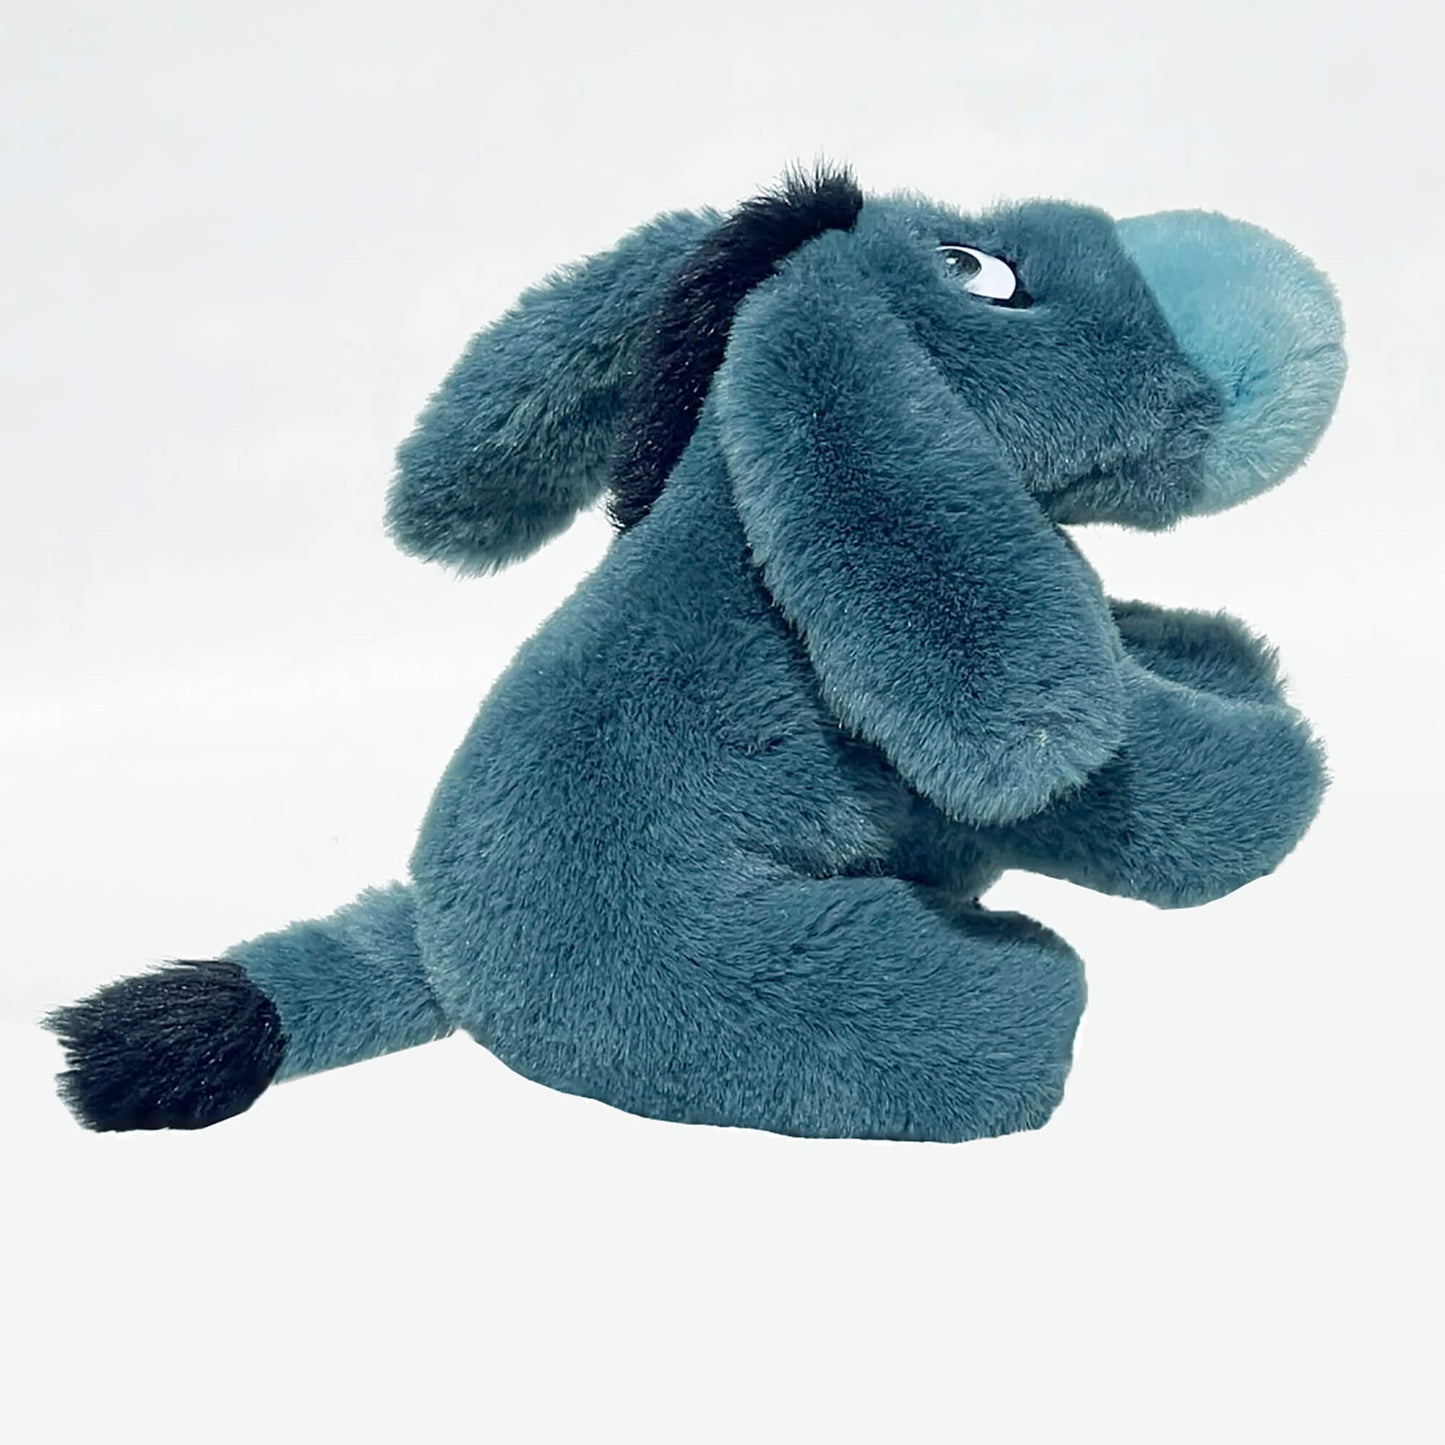 GUND-Plush-Teal-Eeyore-Stuffed-Animal-Toy, sitting up